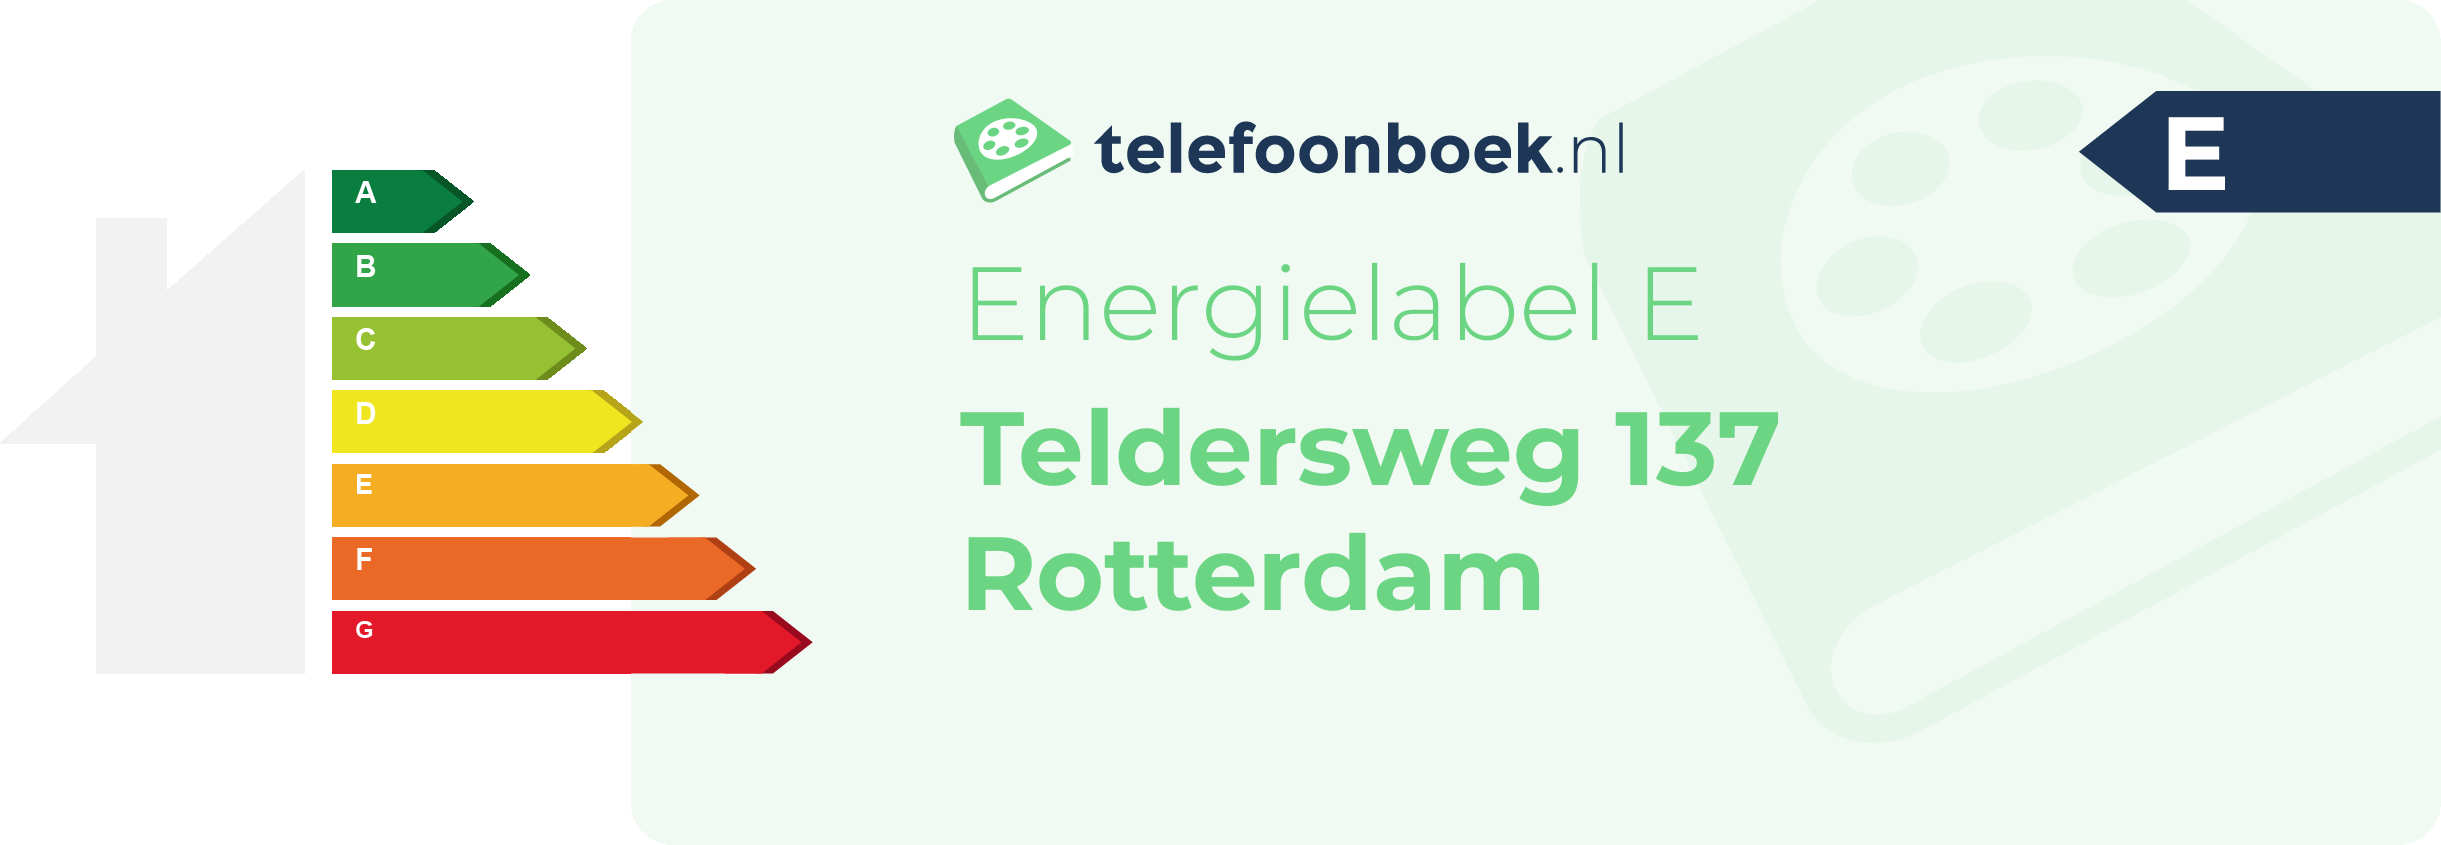 Energielabel Teldersweg 137 Rotterdam